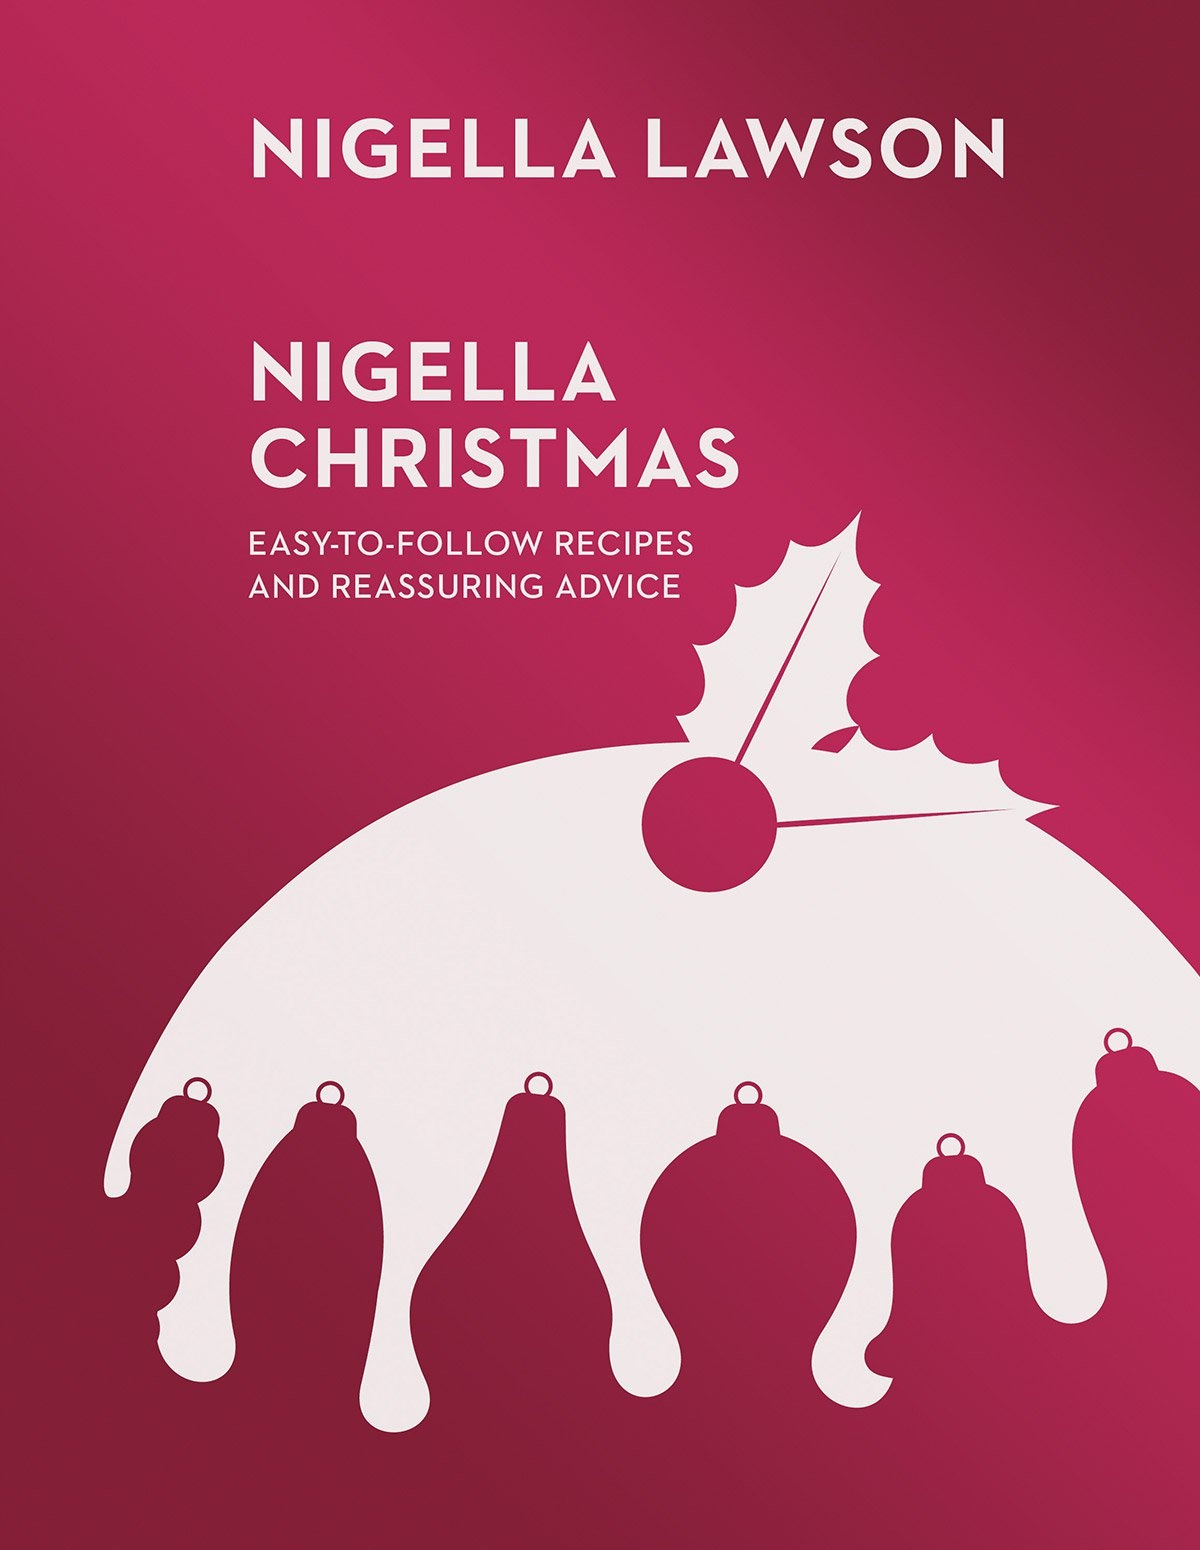 Book cover of Nigella Christmas by Nigella Lawson